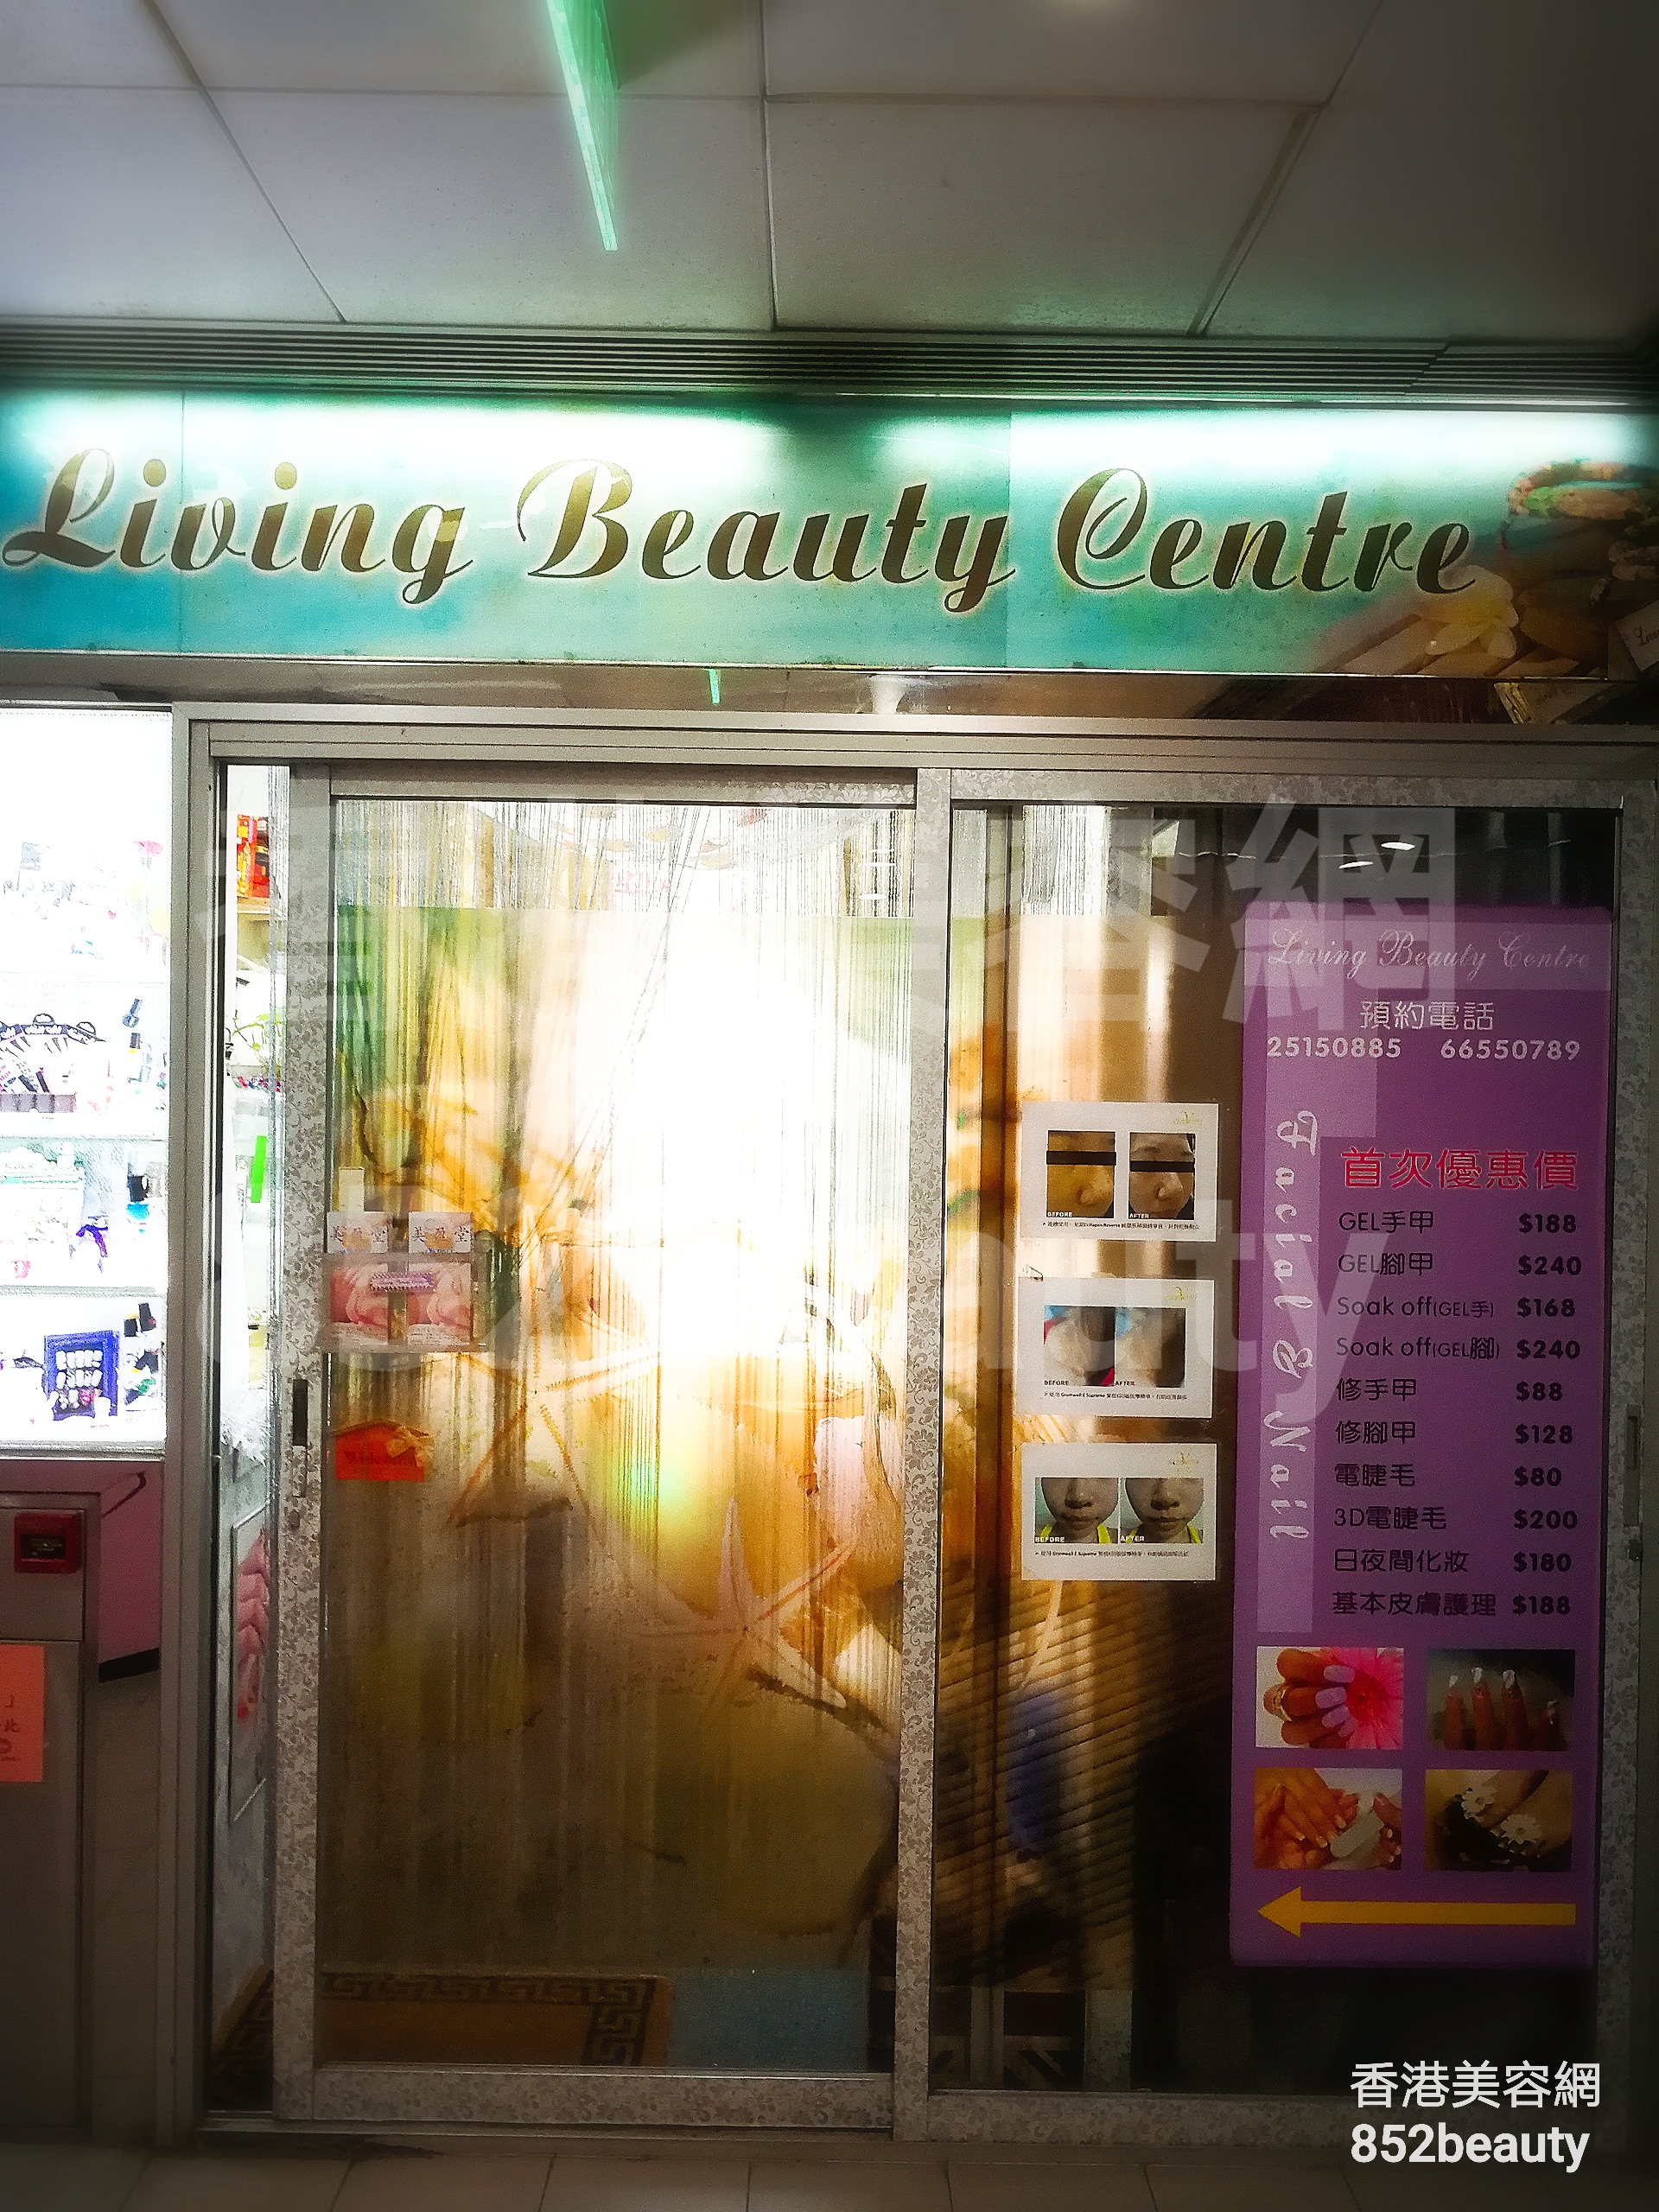 Facial Care: Living Beauty Centre